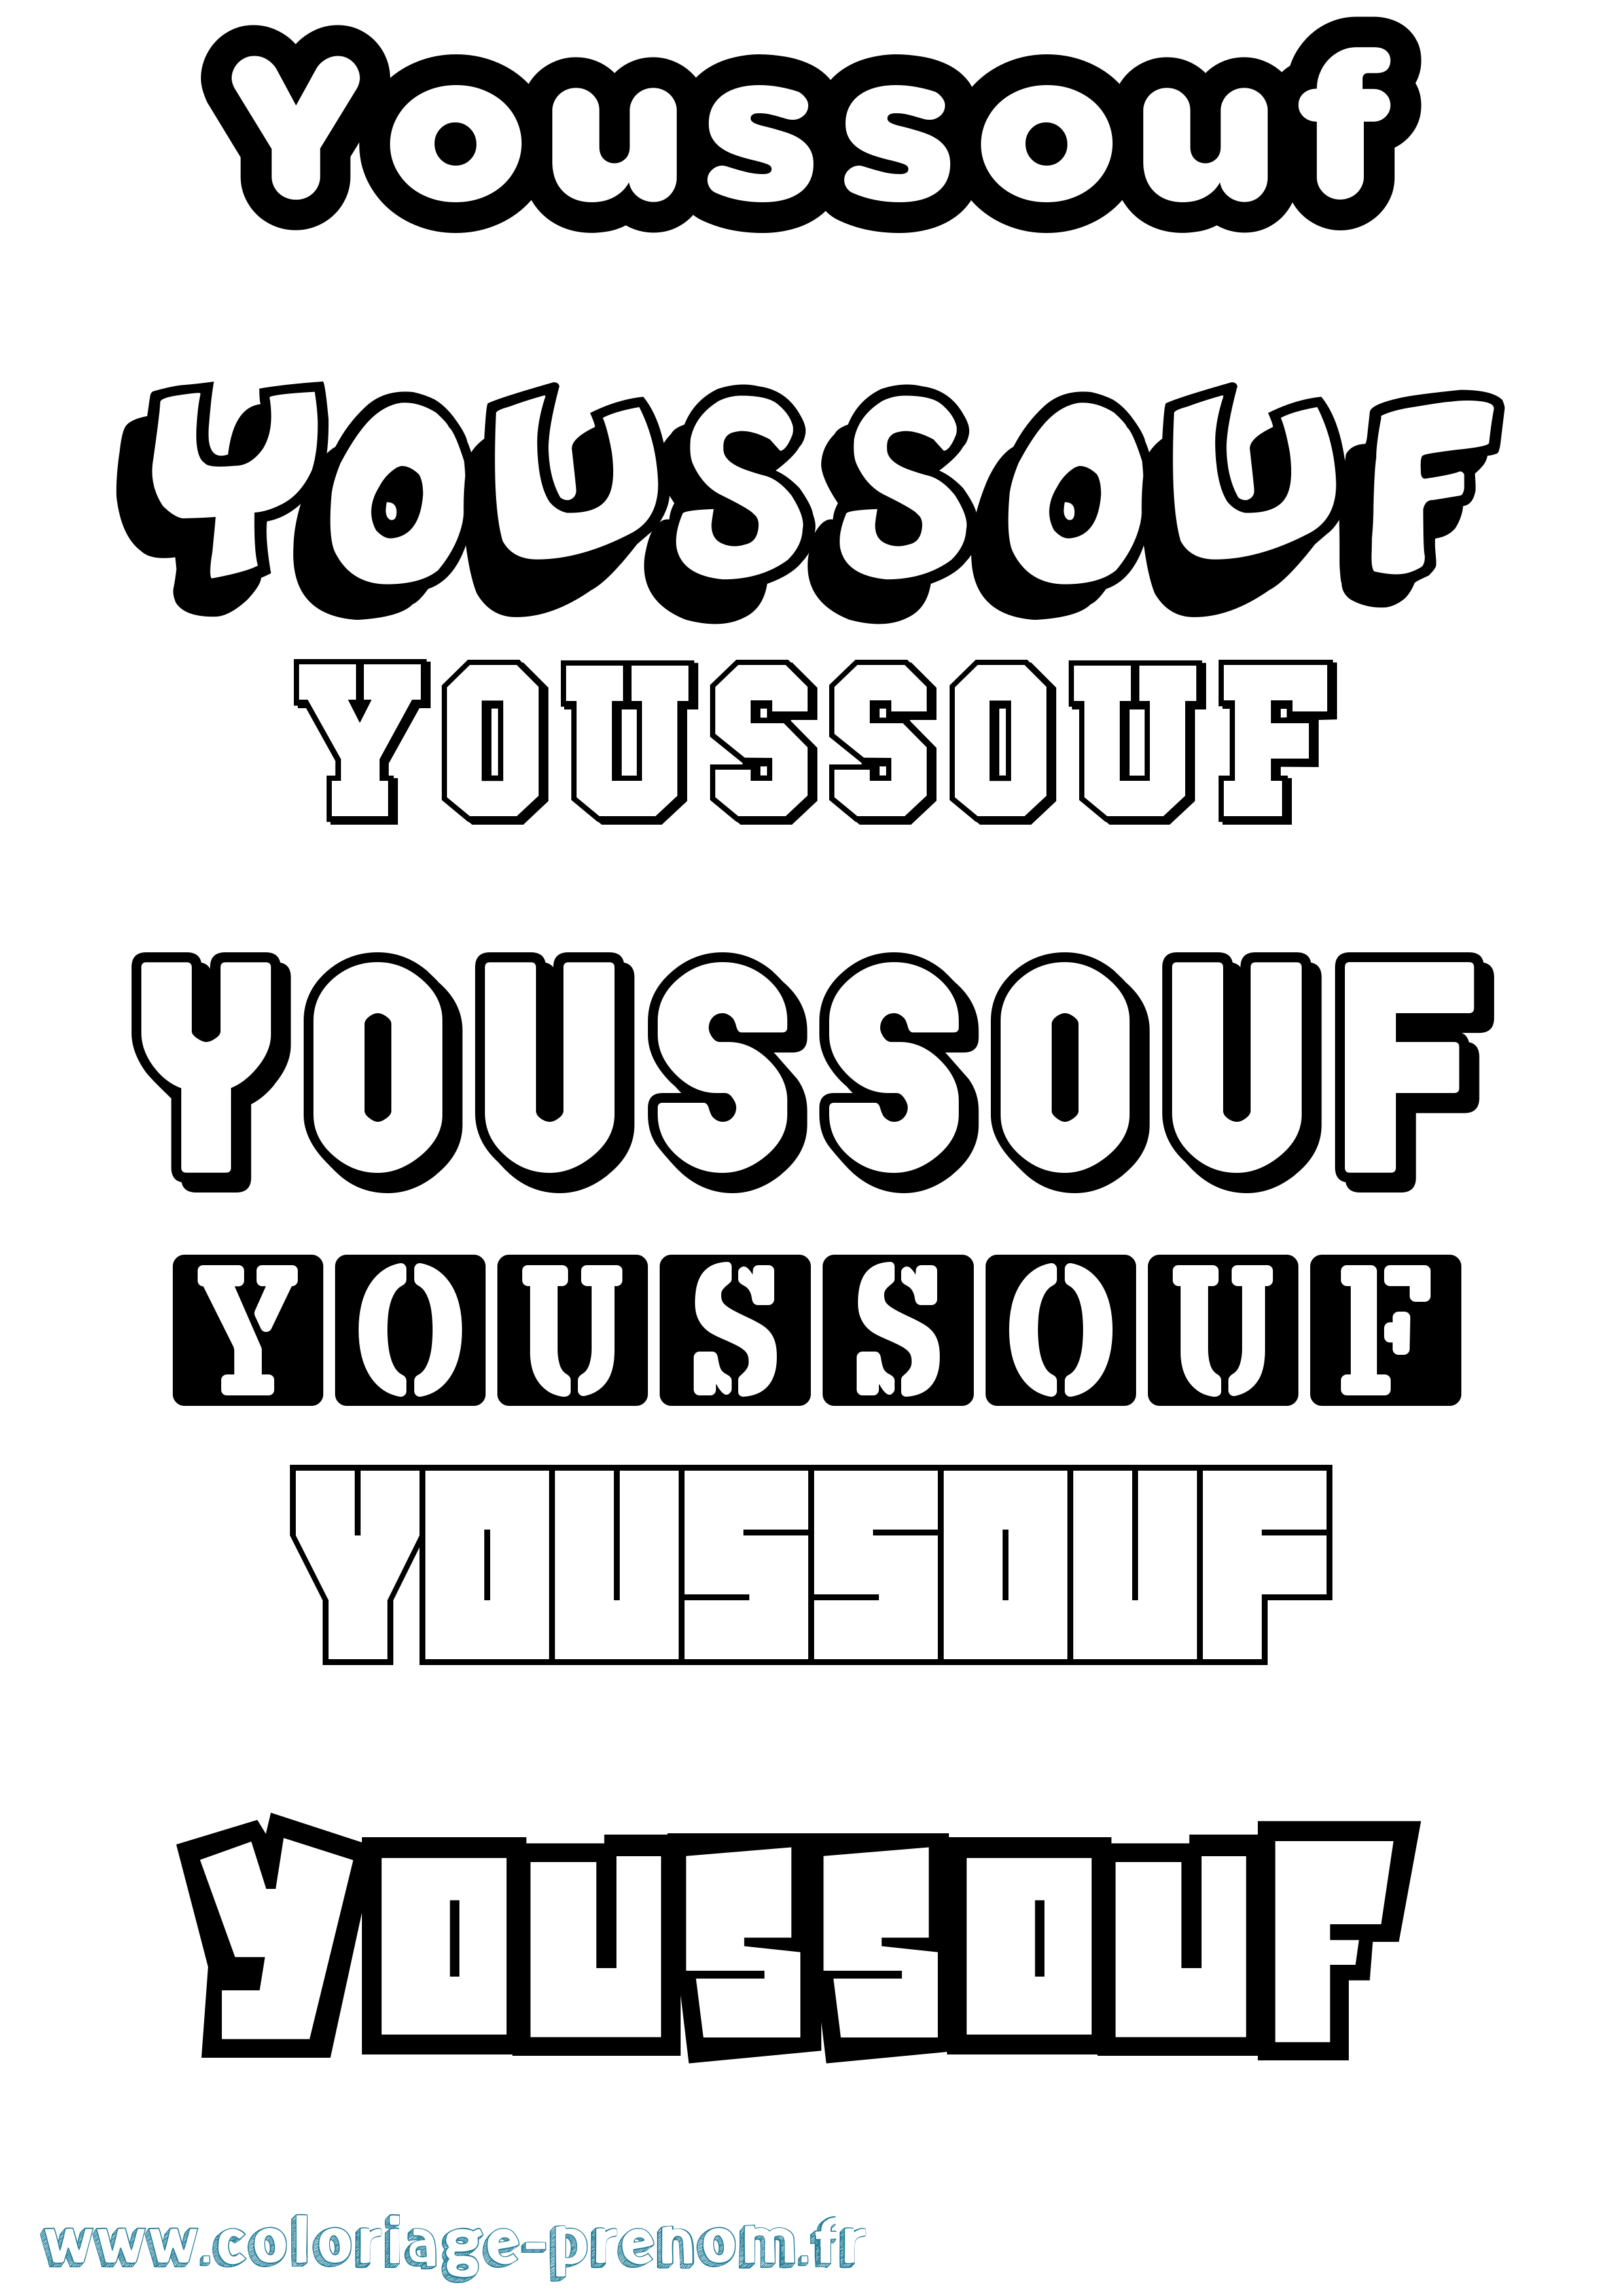 Coloriage prénom Youssouf Simple